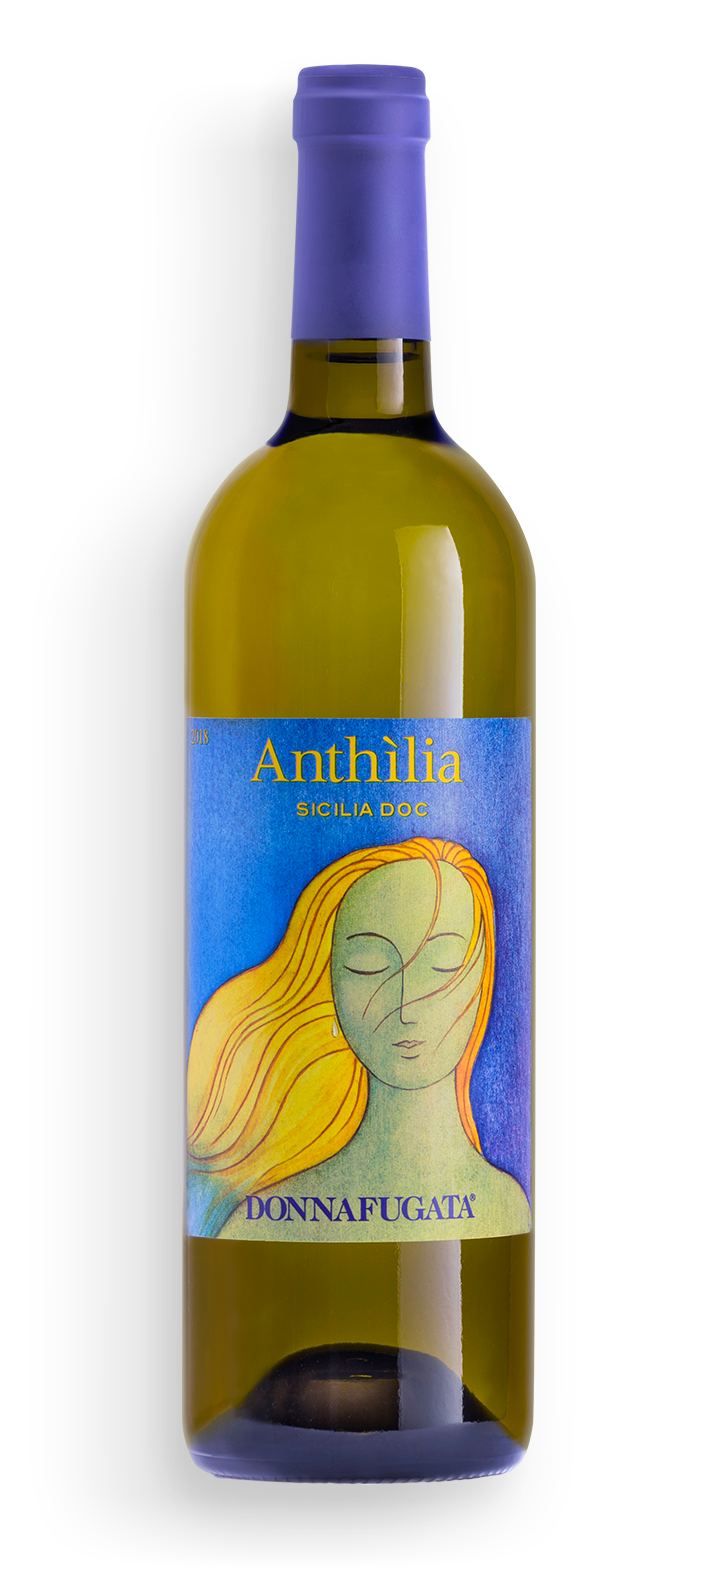 "Anthilia" Sicilia DOC Bianco 2021, DonnaFugata